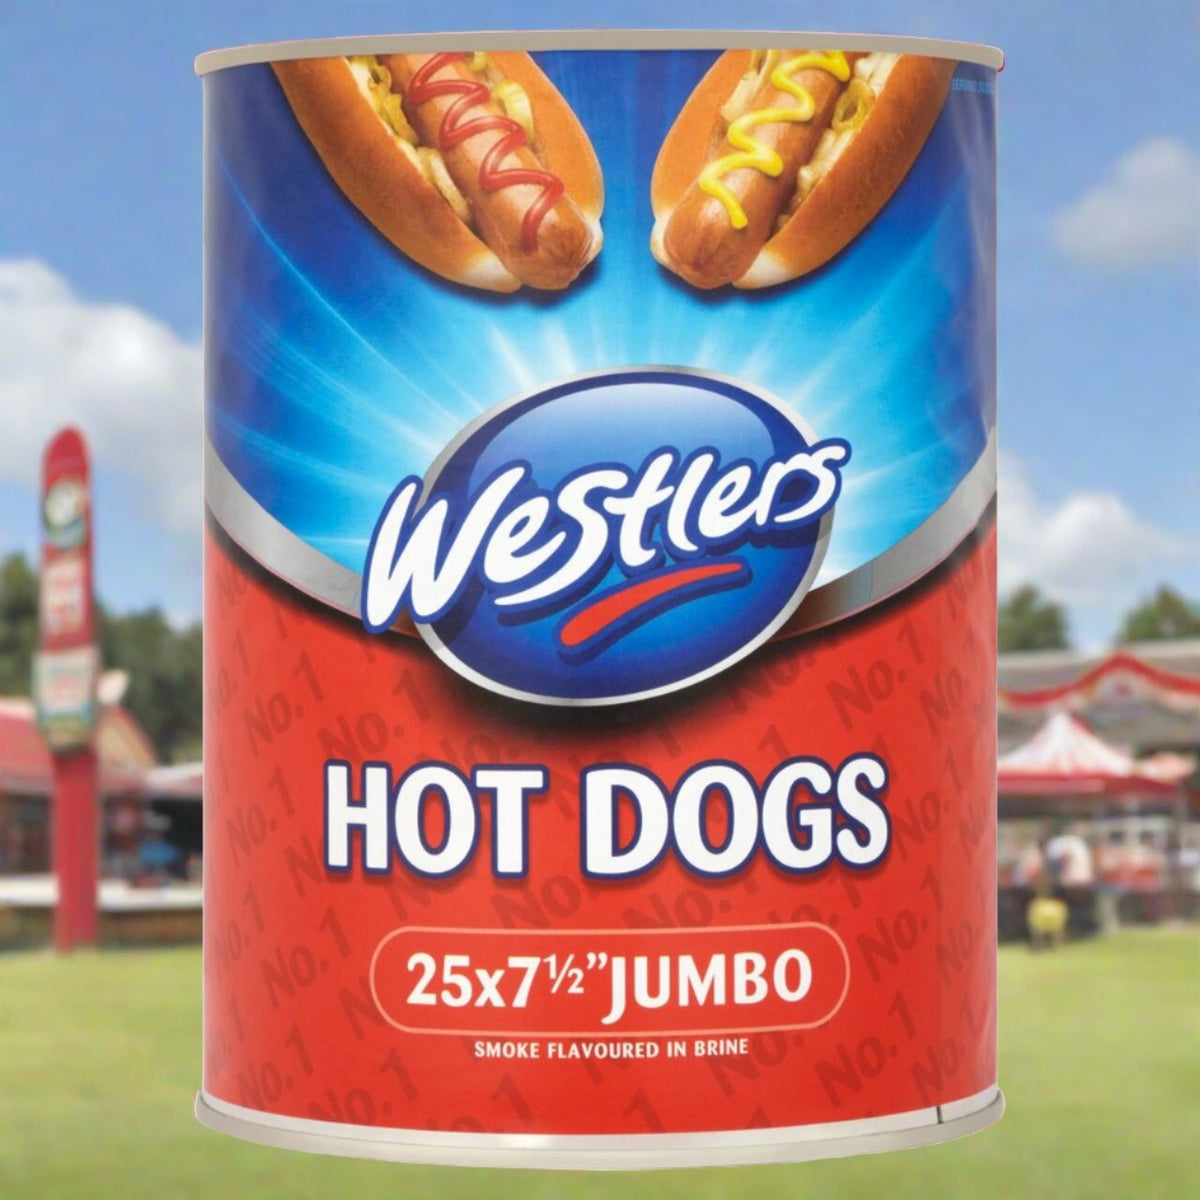 Westlers Jumbo Hot Dogs 25 x 7½"